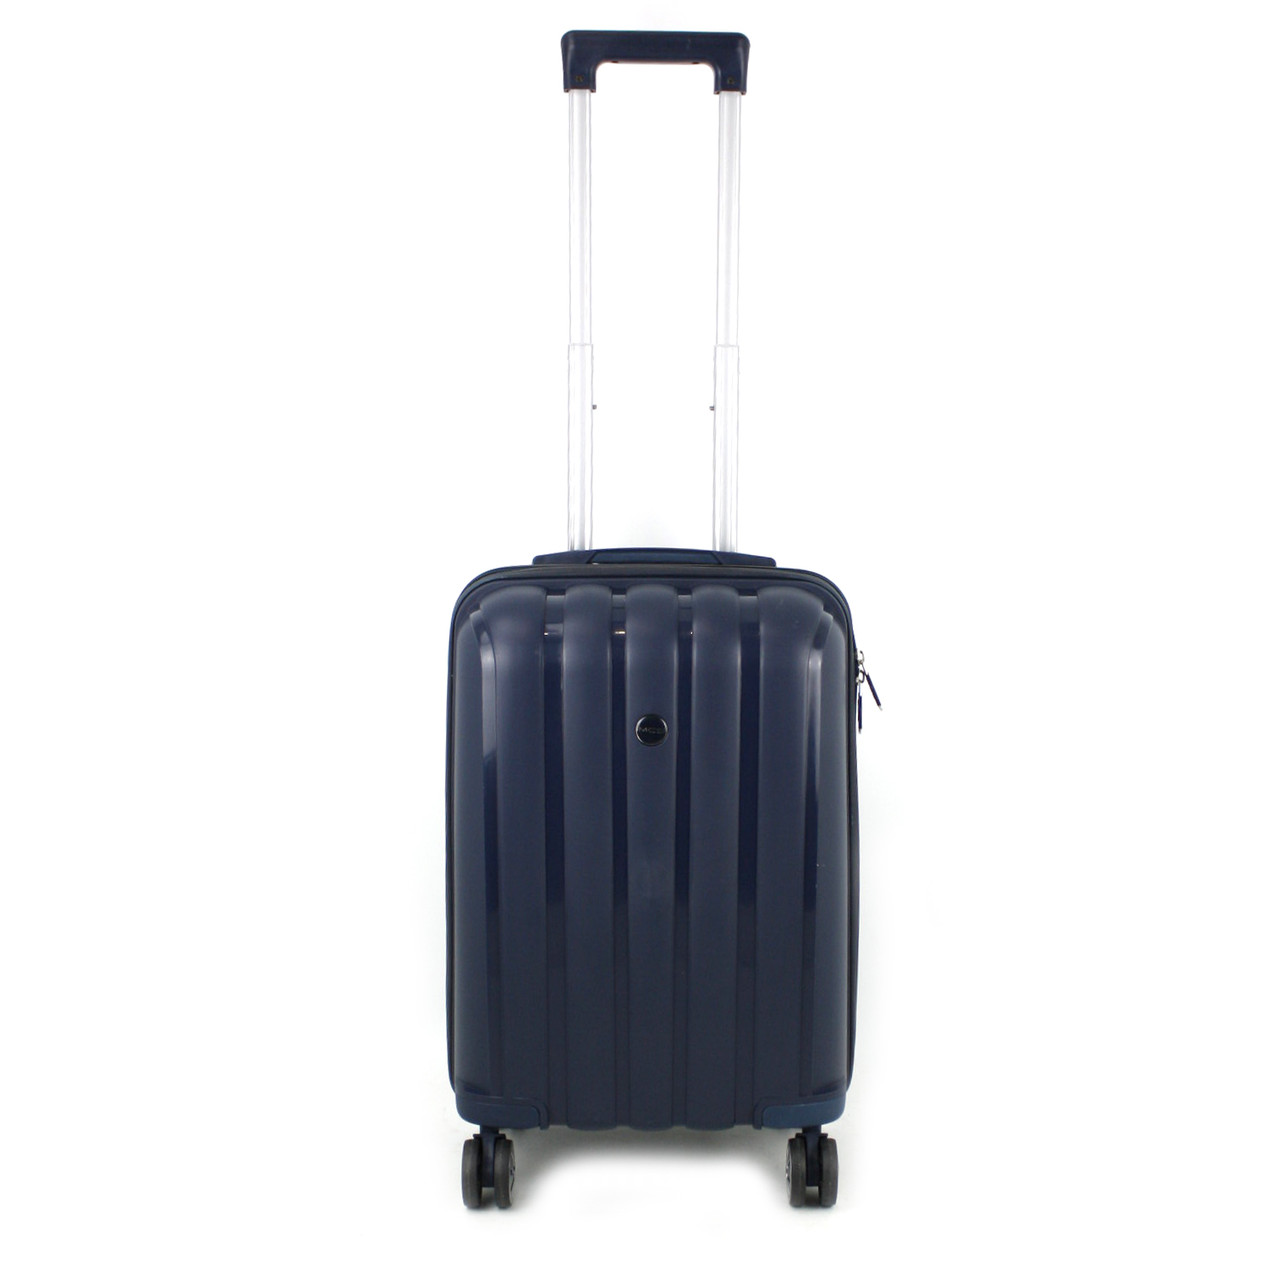 Маленький чемодан для ручьной клади из полипропилена MCS V305 S DARK BLUE! Для 8-10 кг! - 1